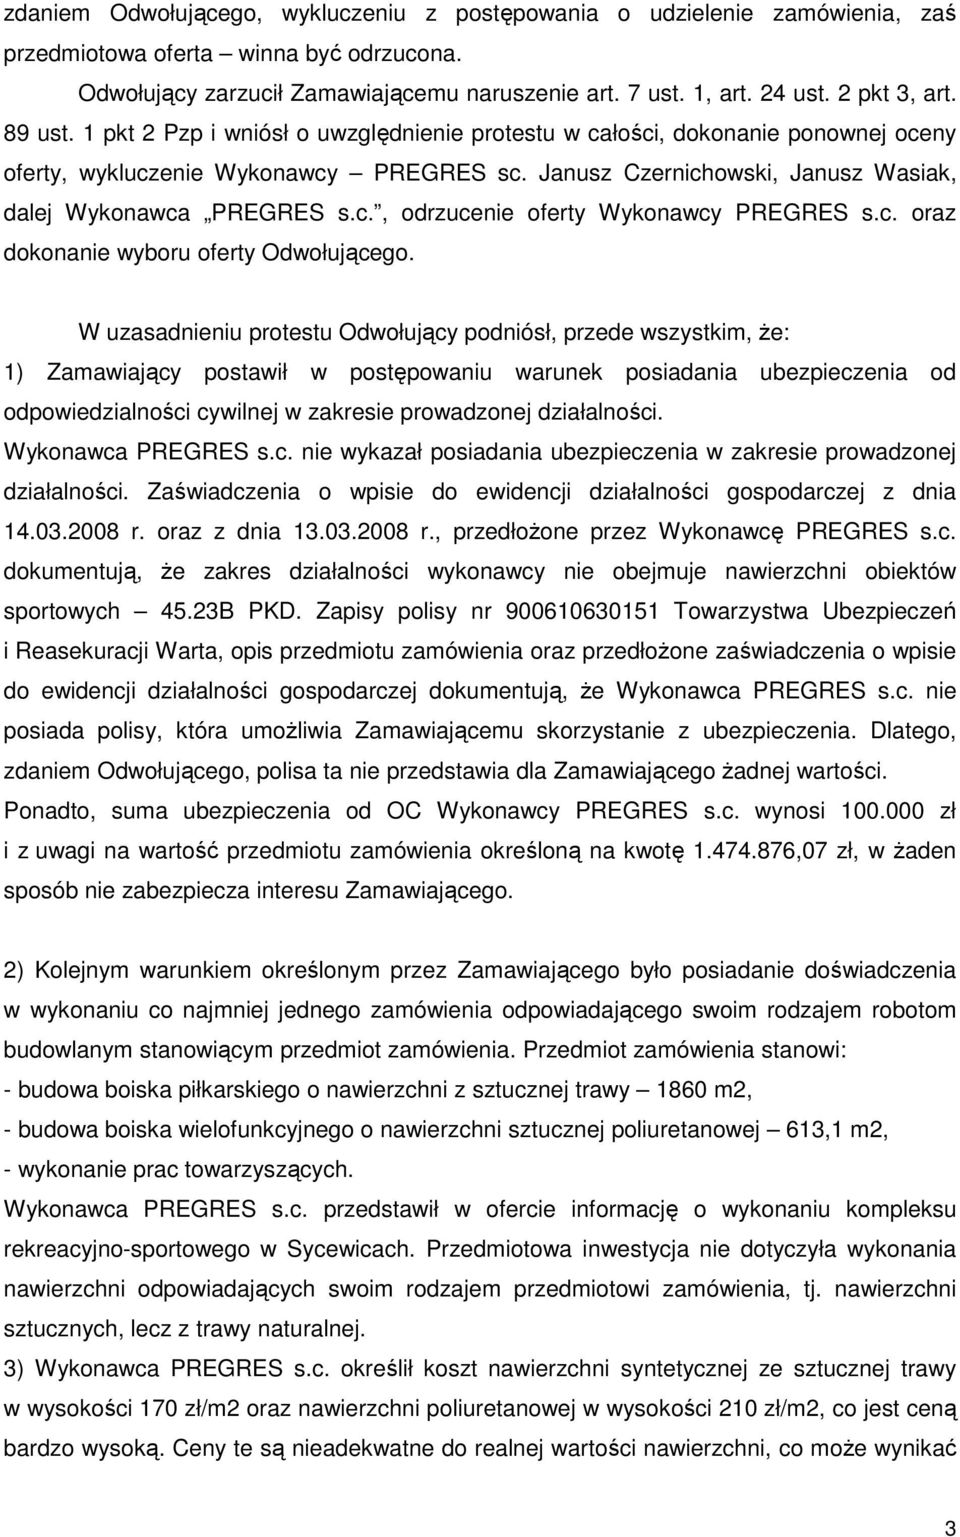 Janusz Czernichowski, Janusz Wasiak, dalej Wykonawca PREGRES s.c., odrzucenie oferty Wykonawcy PREGRES s.c. oraz dokonanie wyboru oferty Odwołującego.